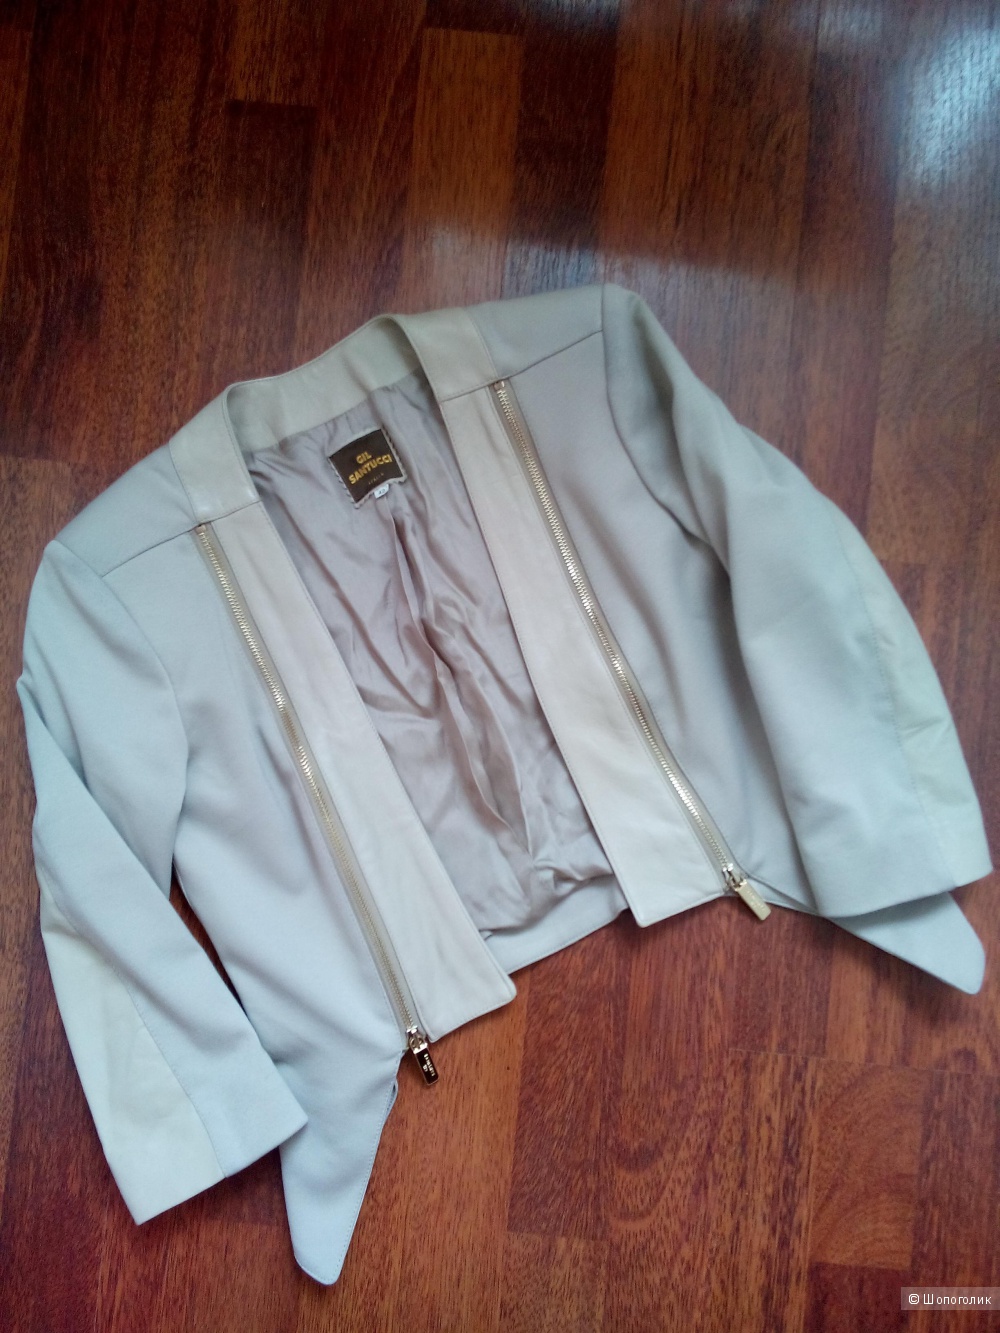 Куртка-болеро(трикотаж-натуральная кожа) GIL SANTUCCI Италия в размере 42 (ИТ)44 росс.